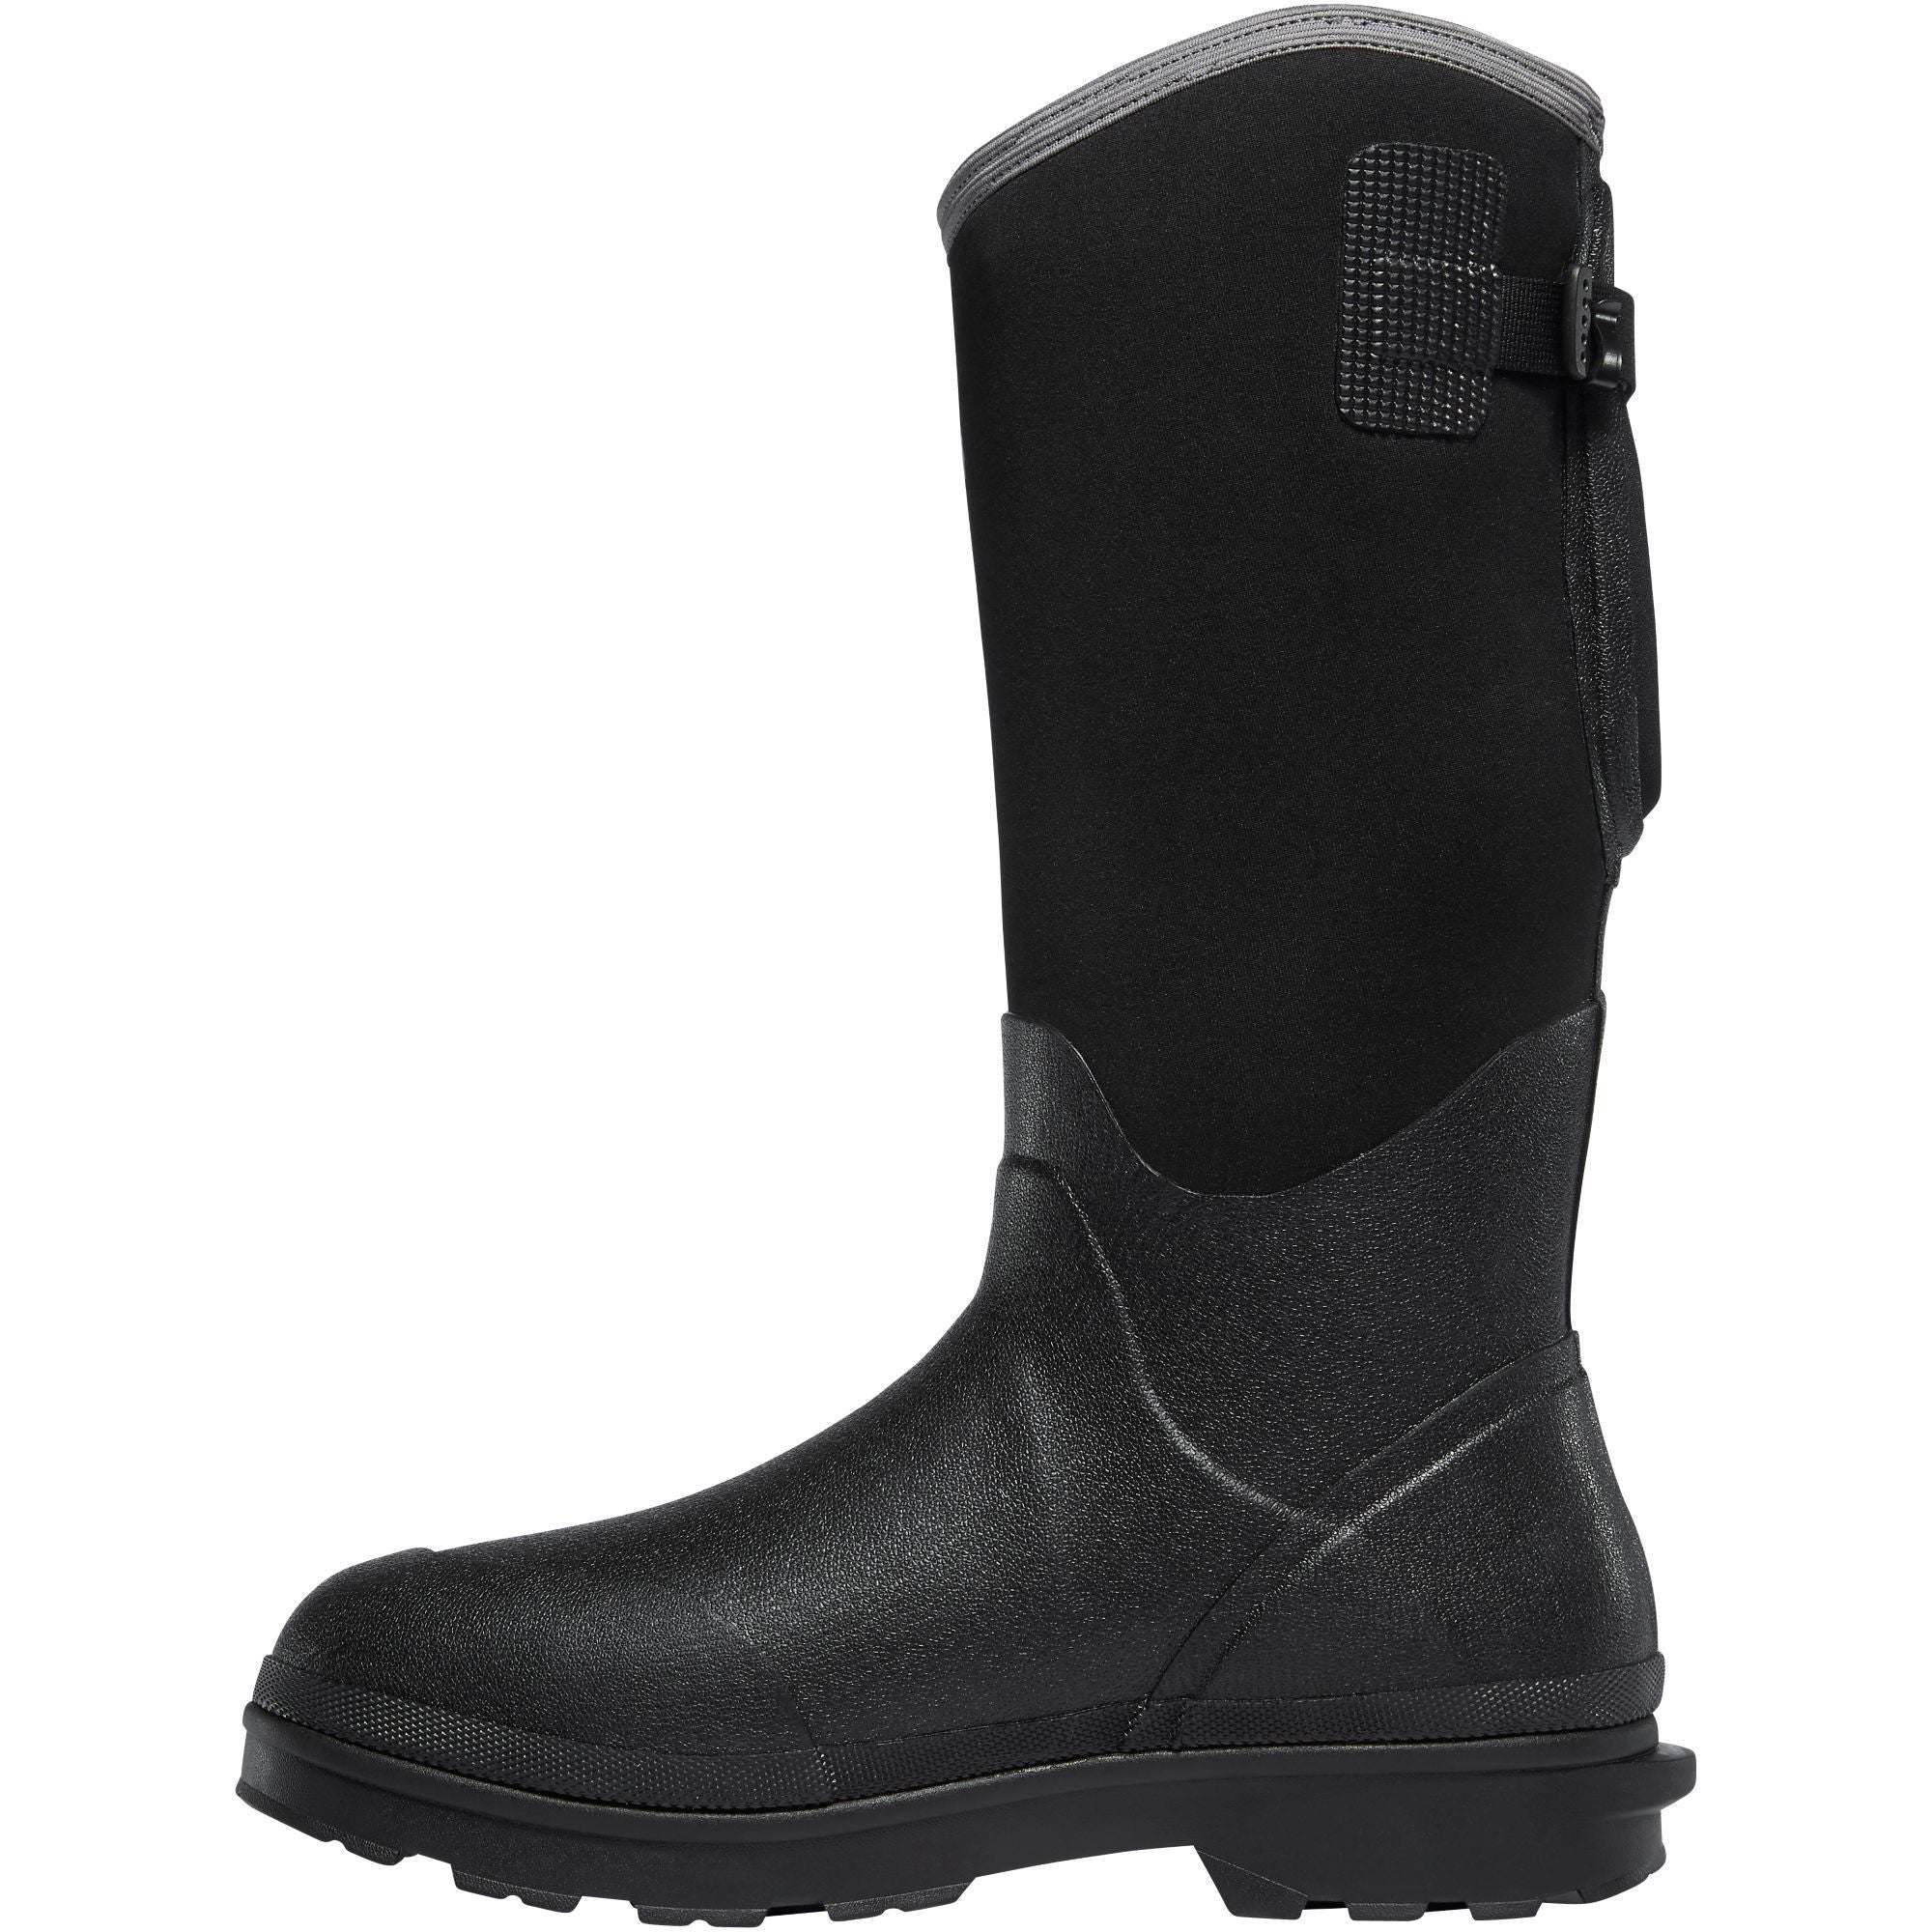 LaCrosse Men's Alpha Range 14" Ins Rubber Work Boot Black  - 602240  - Overlook Boots